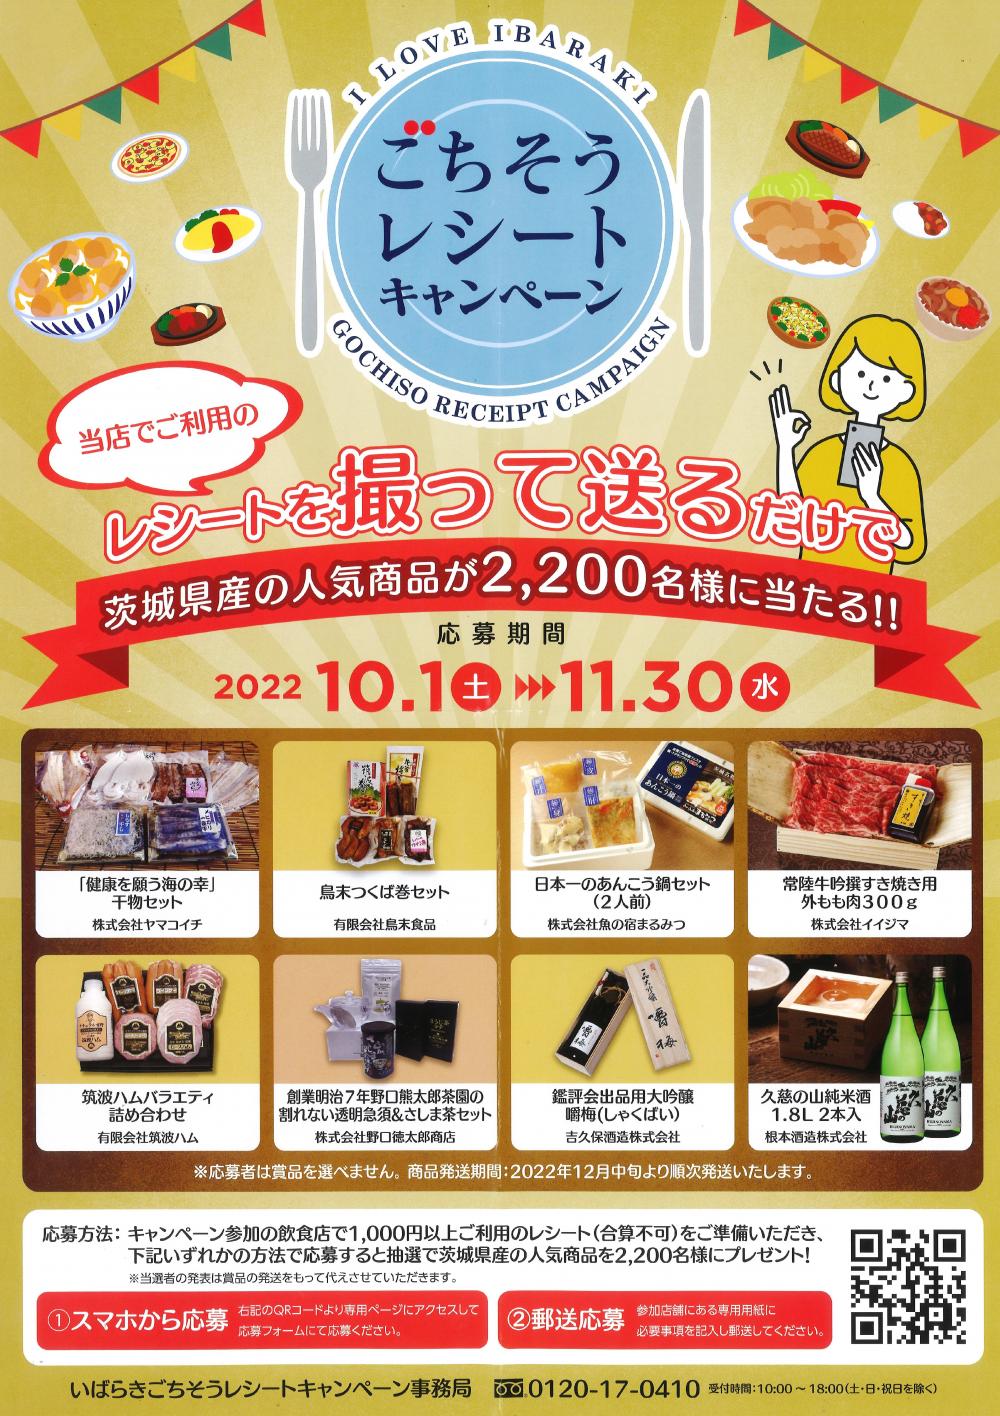 レストラン☆いばらきごちそうレシートキャンペーンに関するページ